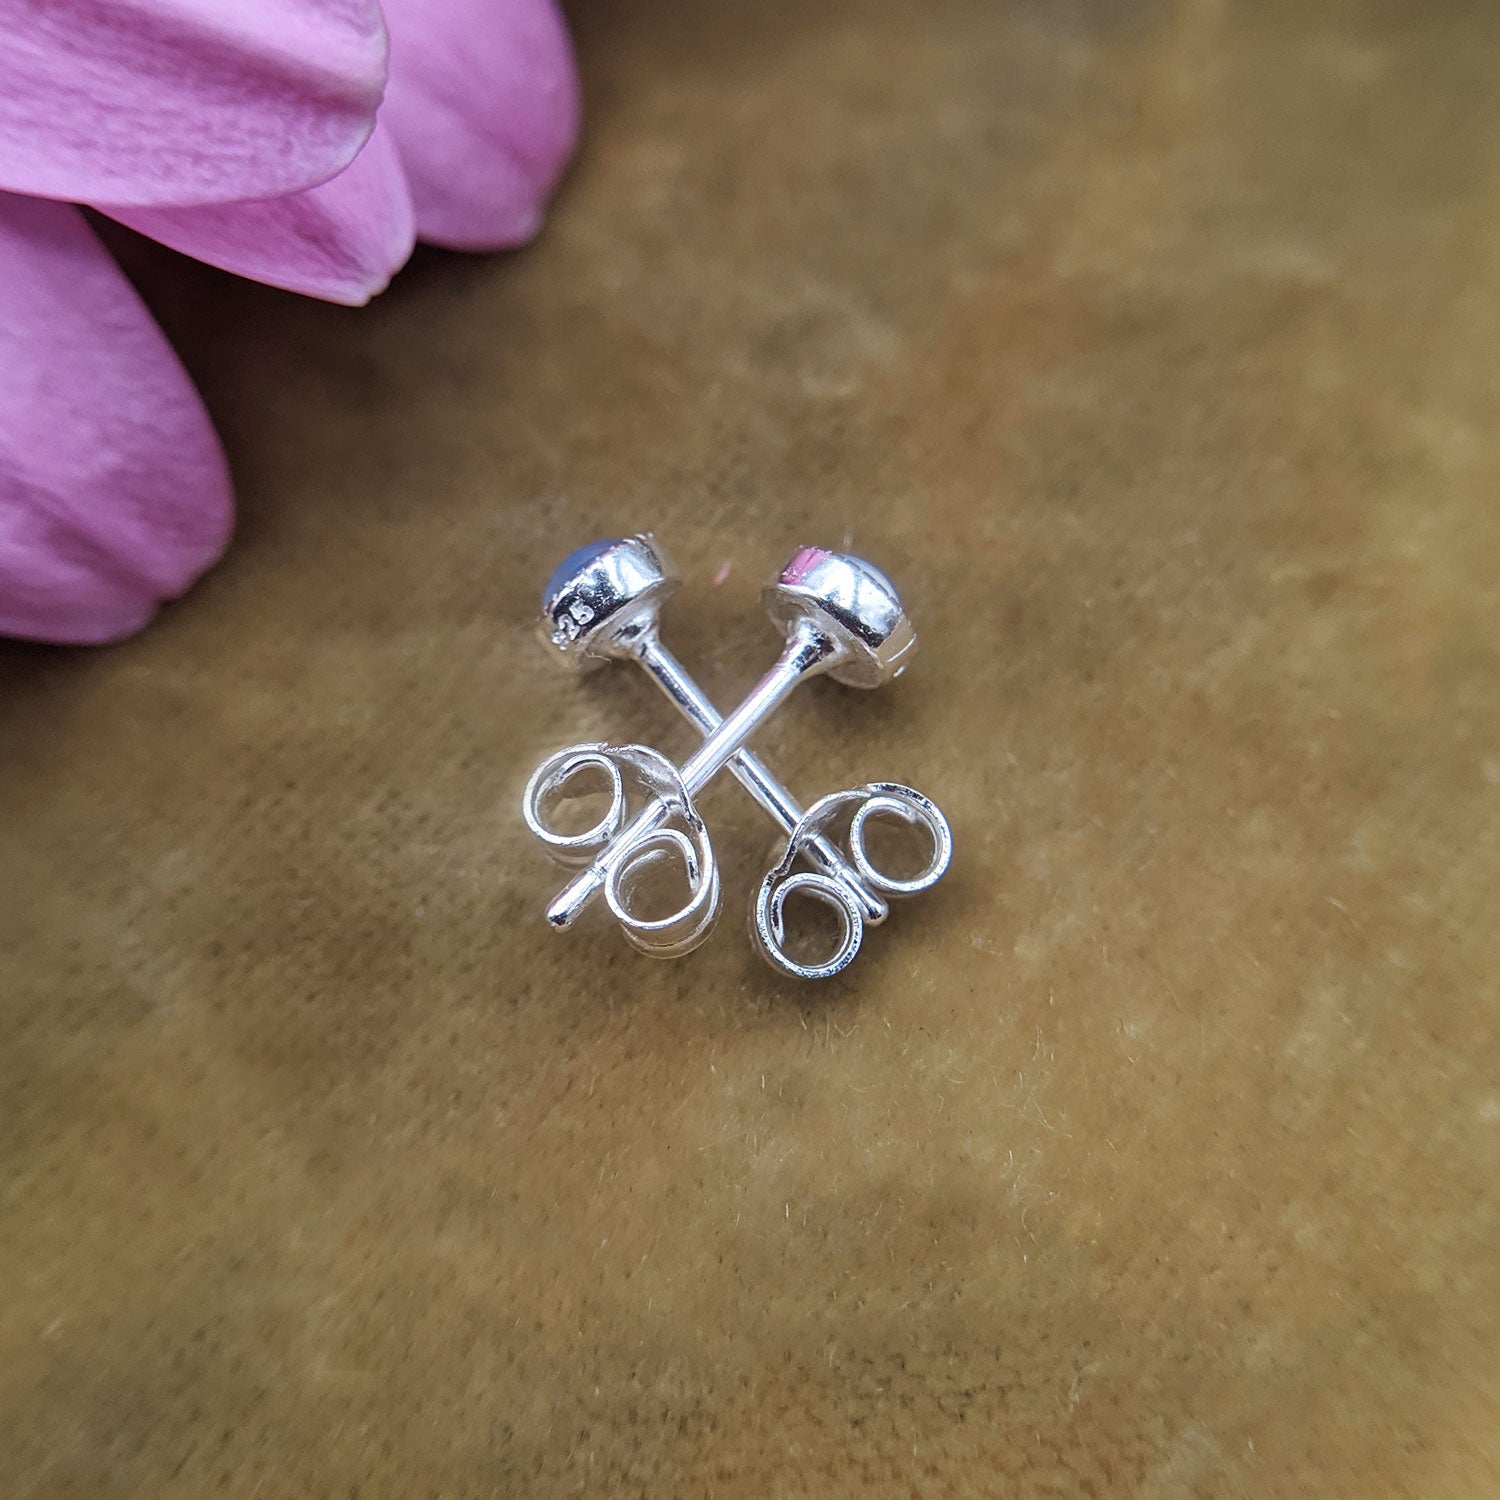 small opal stud earrings in sterling silver